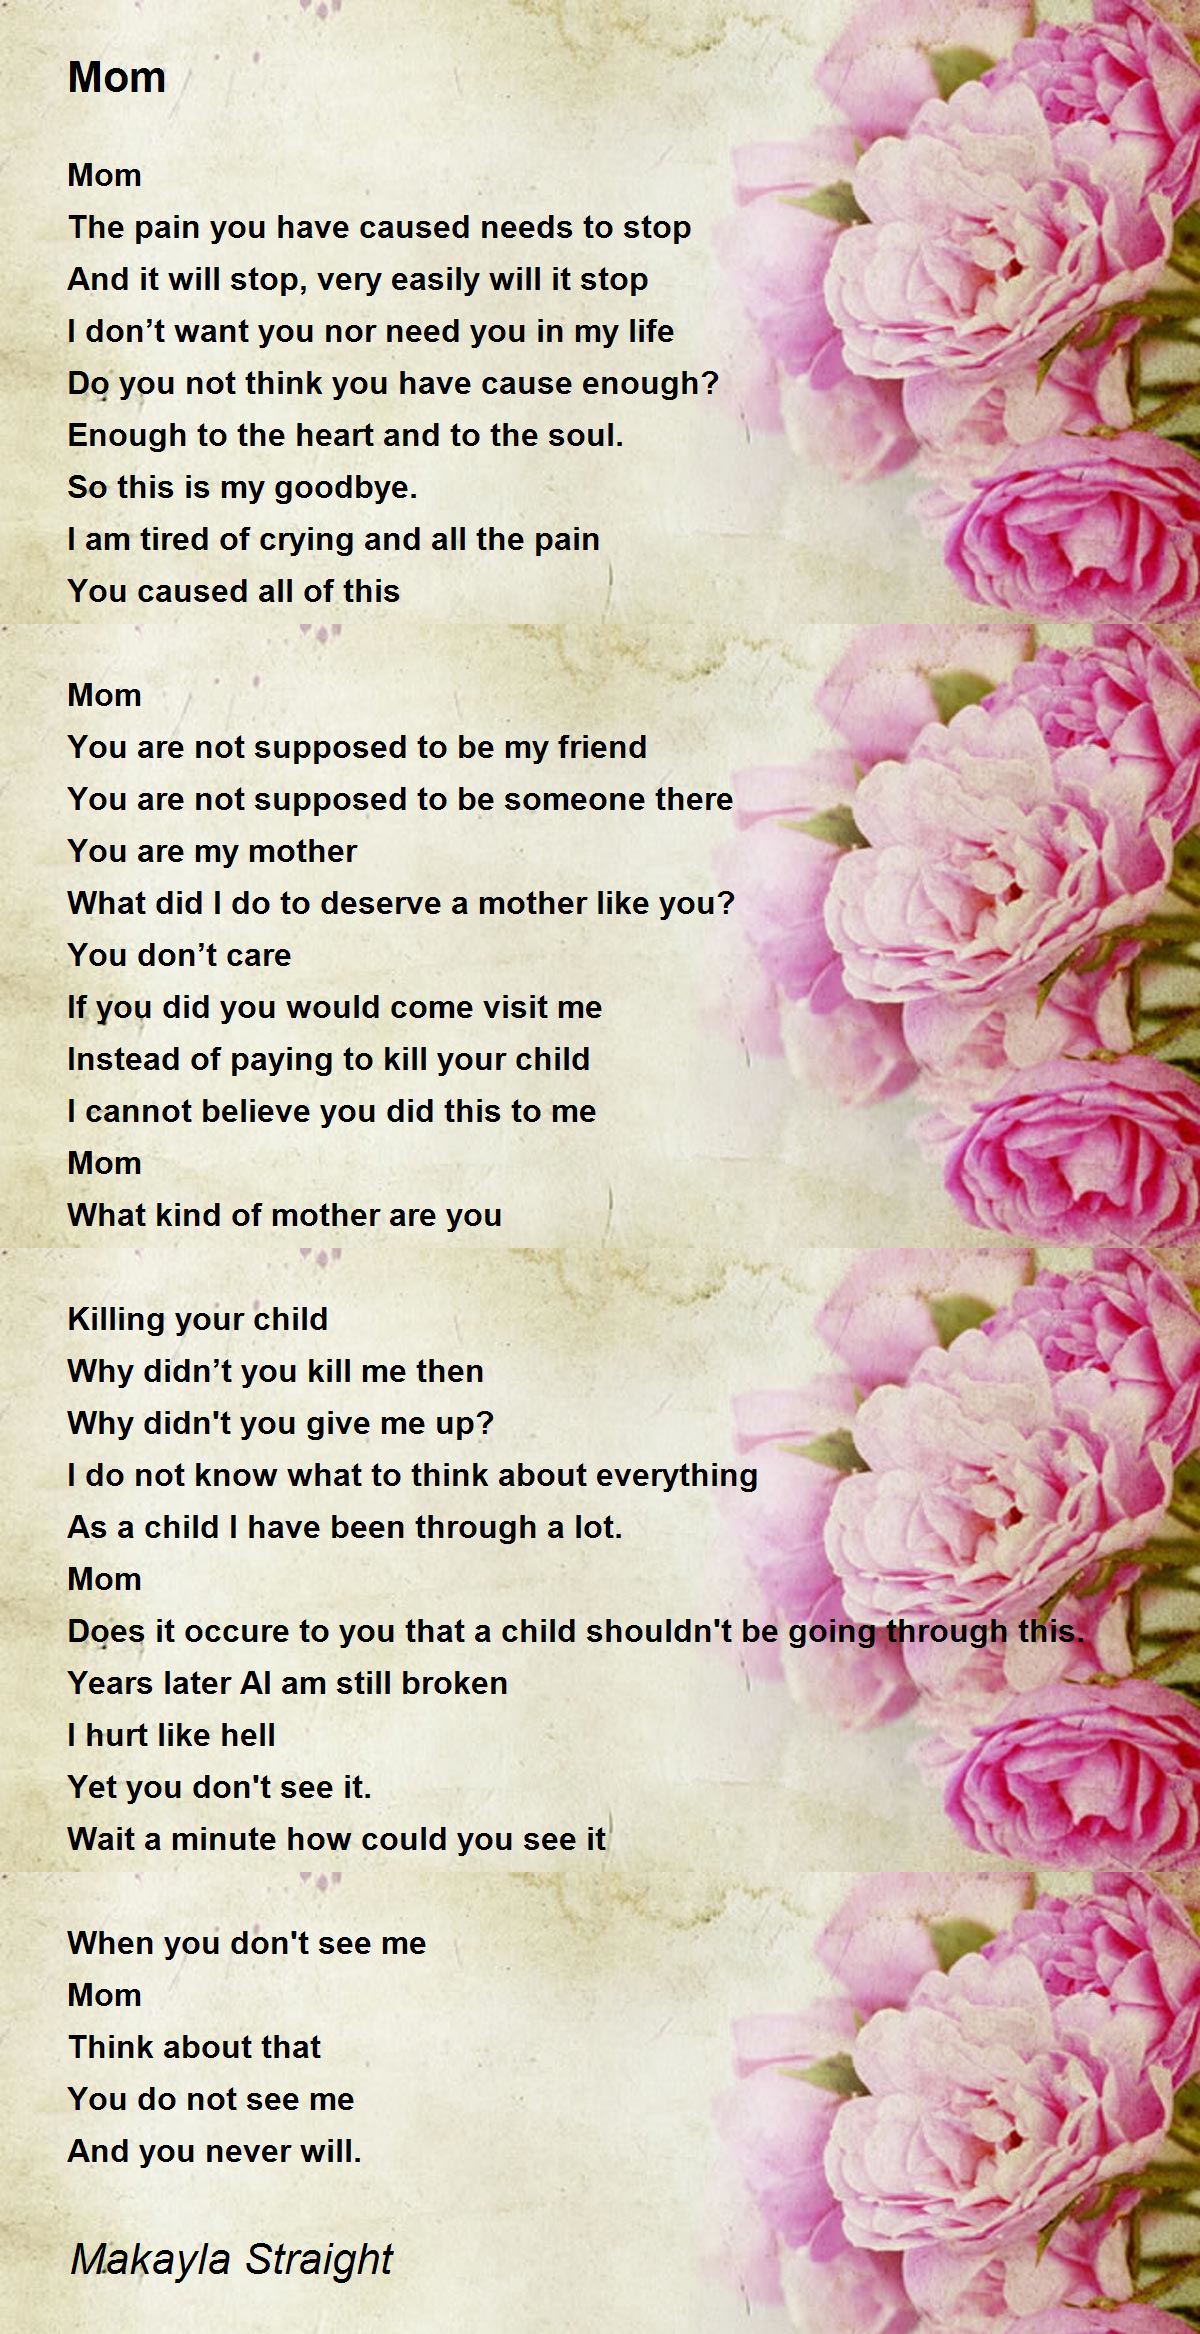 Mom - Mom Poem by Makayla Straight